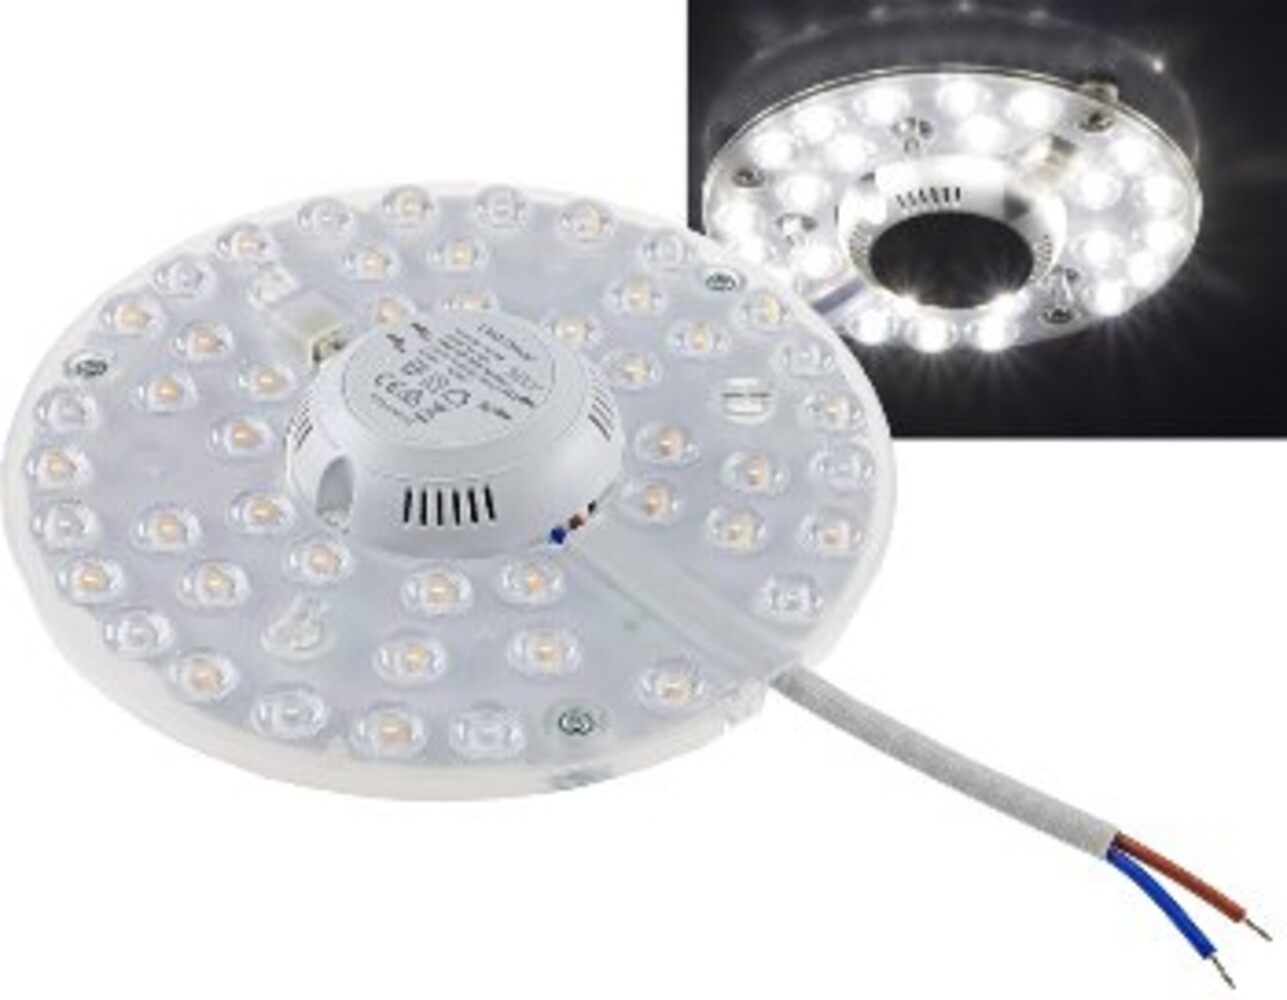 Hochwertiges LED-Umrüstmodul von ChiliTec mit beeindruckender Leuchtkraft